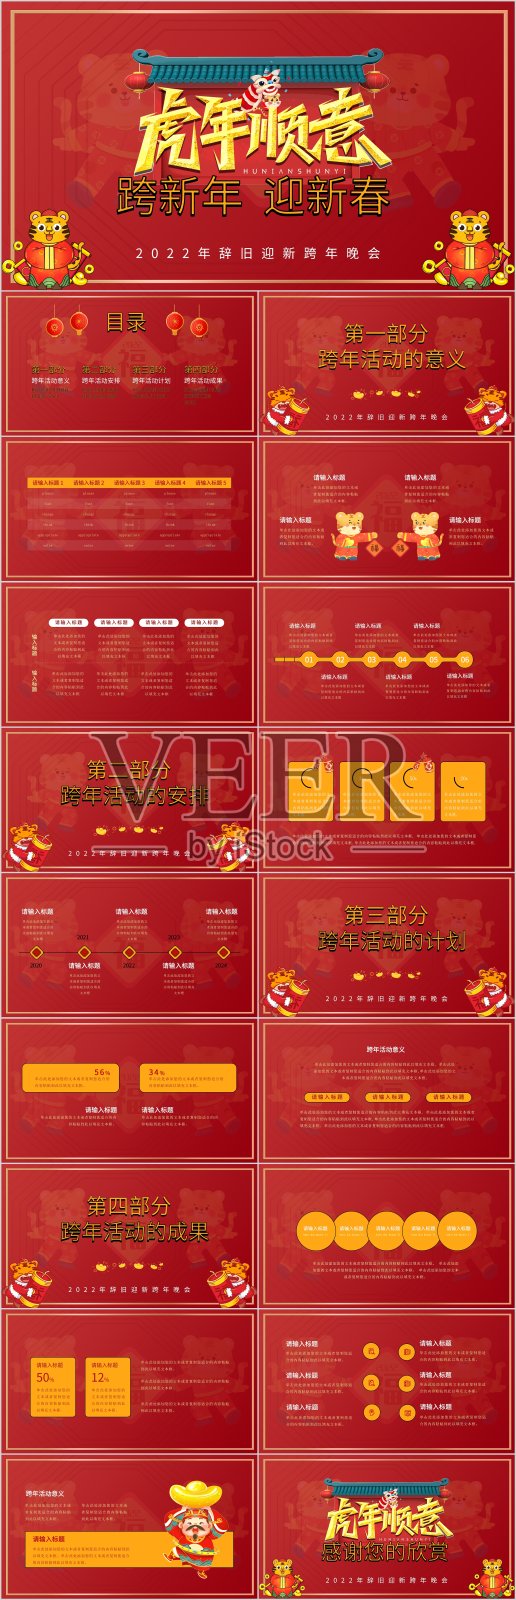 红色中国风虎年活动策划PPT模板设计模板素材